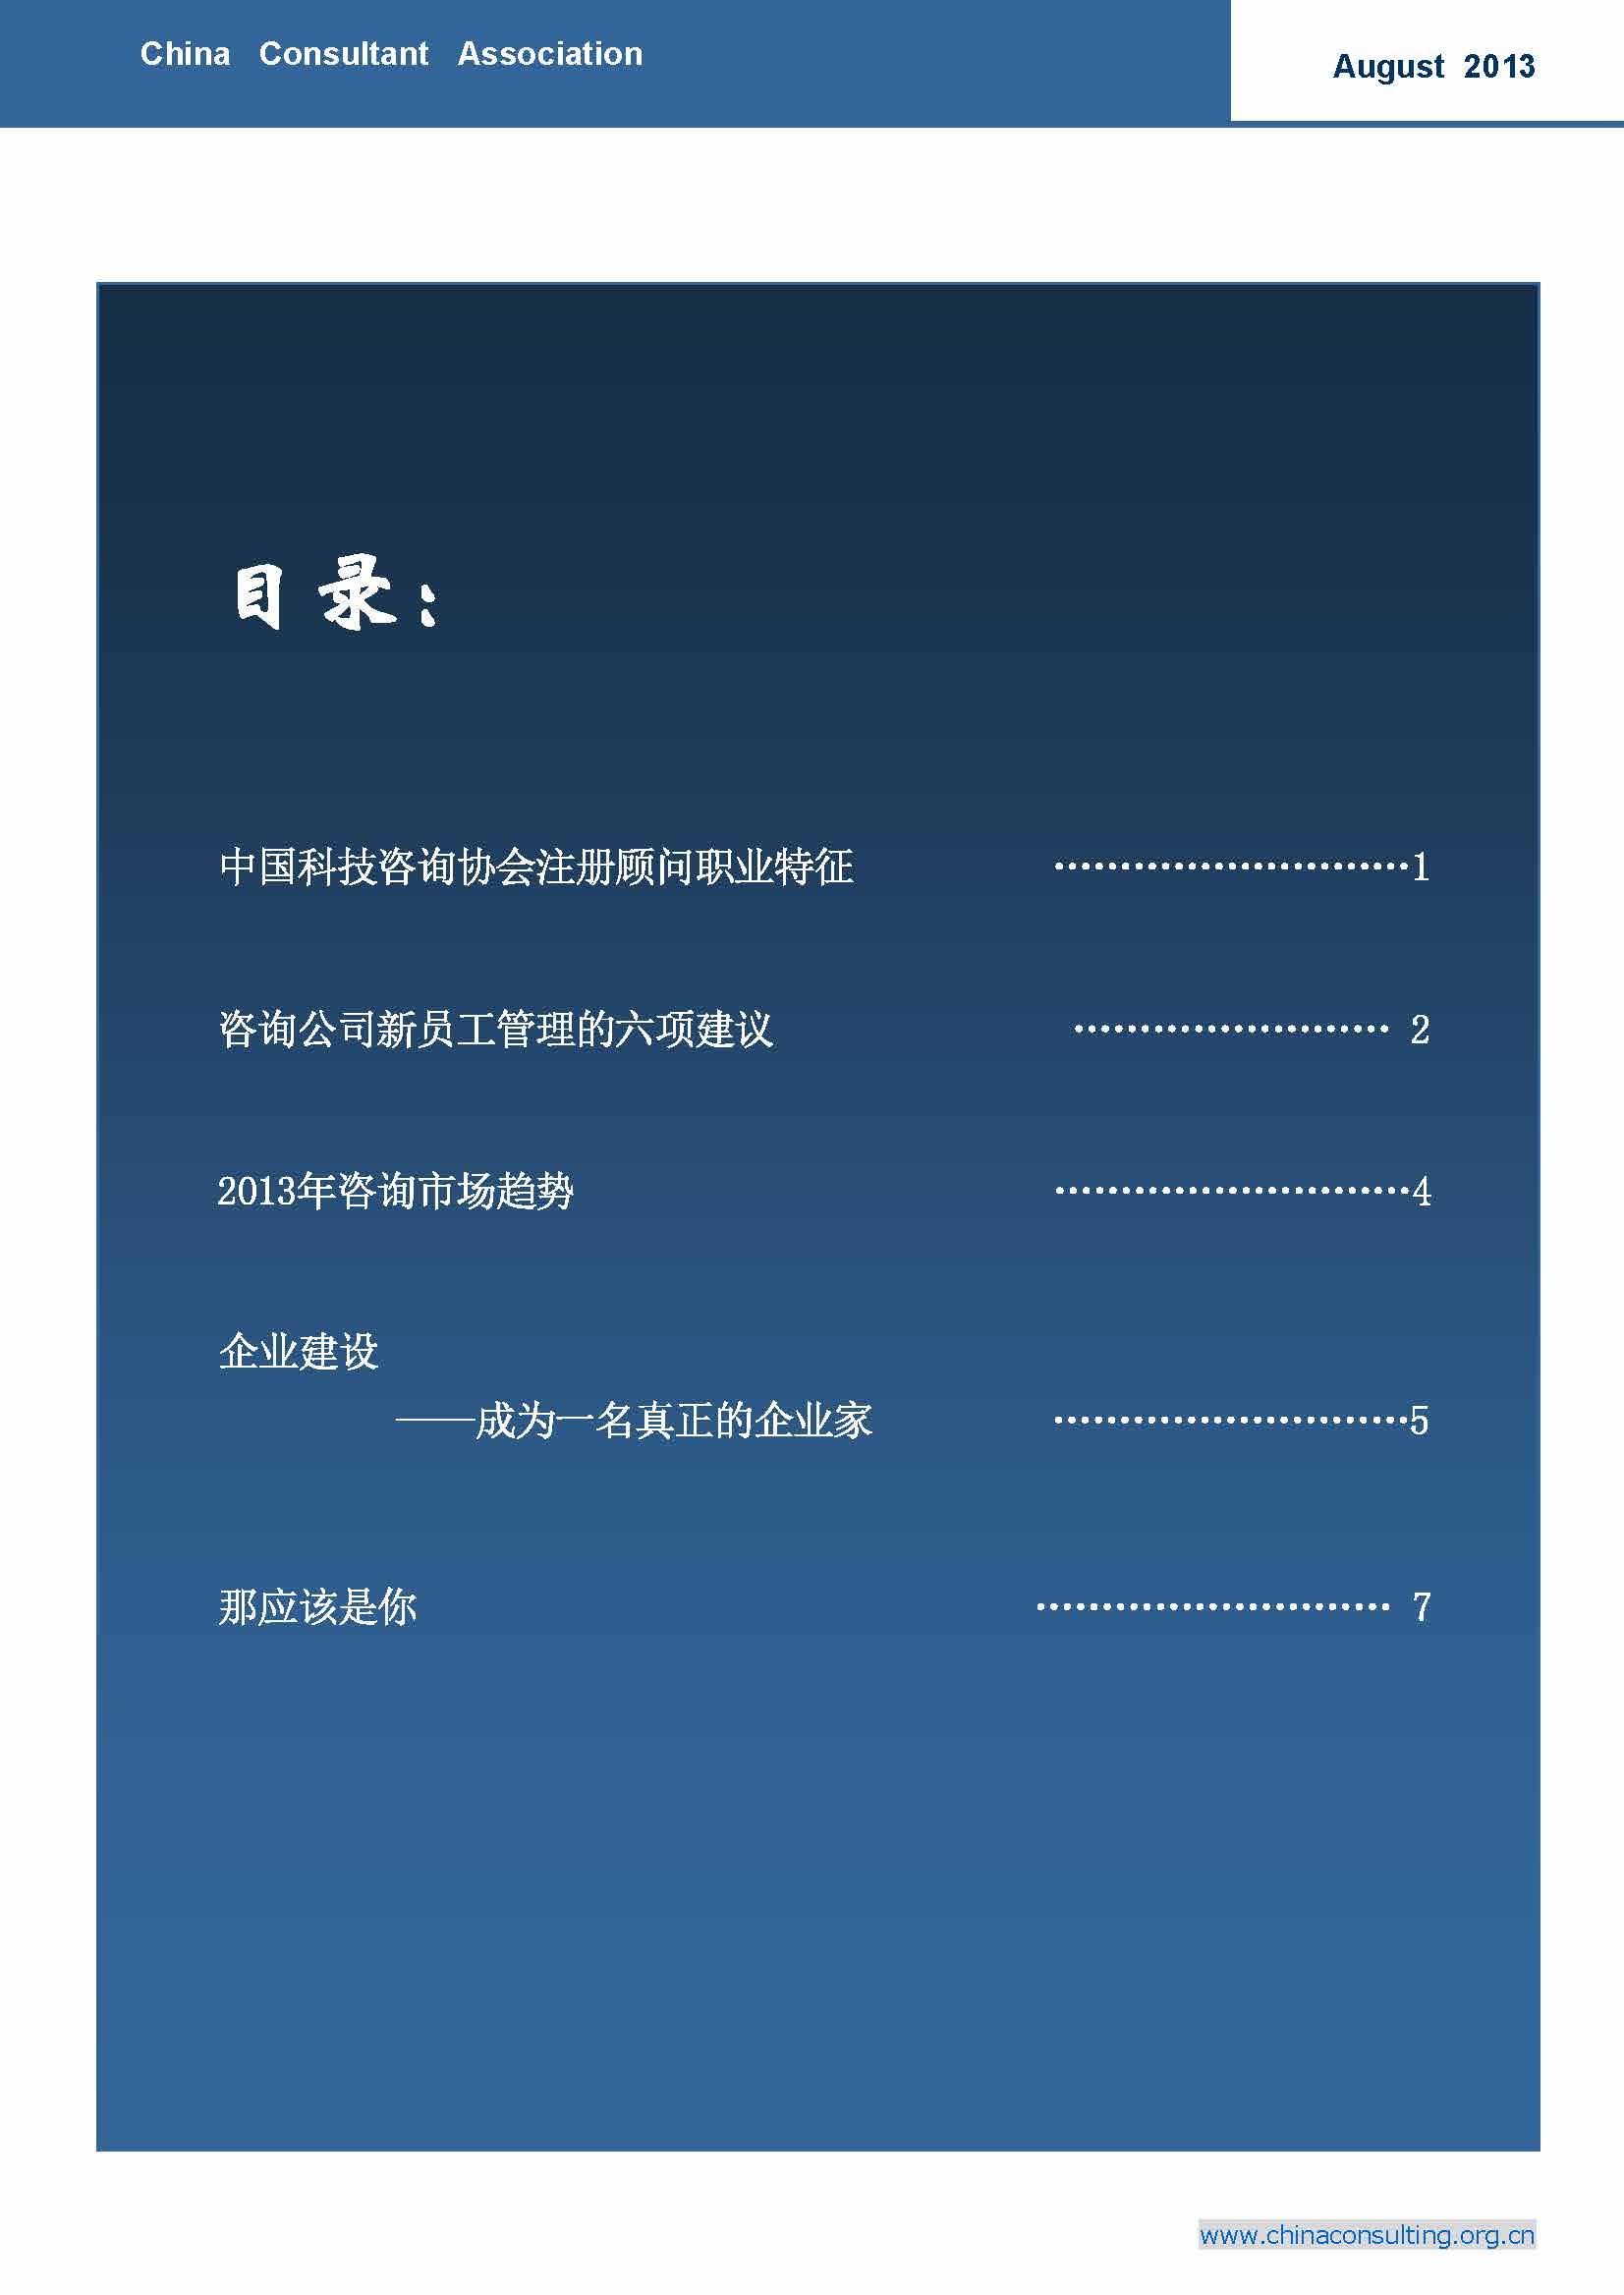 14中国科技咨询协会国际快讯（第十四期）_页面_02.jpg